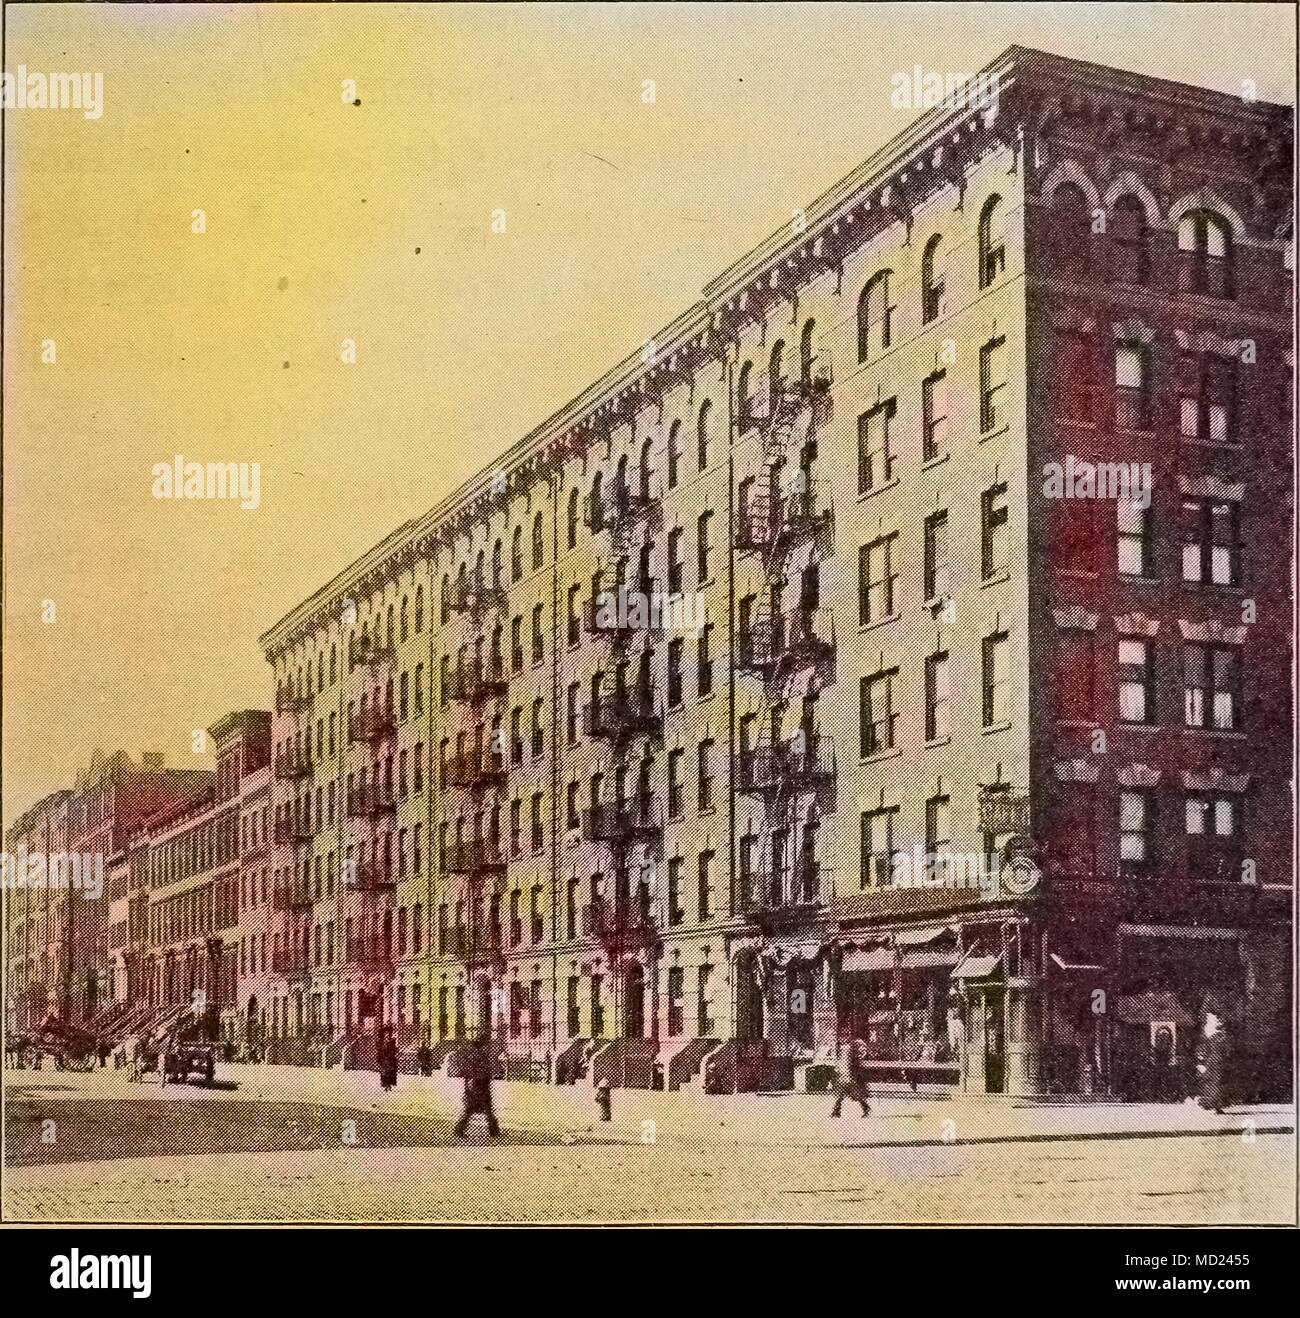 Gravure d'un immeuble, New York City, New York, 1912. Avec la permission de Internet Archive. Remarque : l'image a été colorisée numériquement à l'aide d'un processus moderne. Les couleurs peuvent ne pas être exacts à l'autre. () Banque D'Images